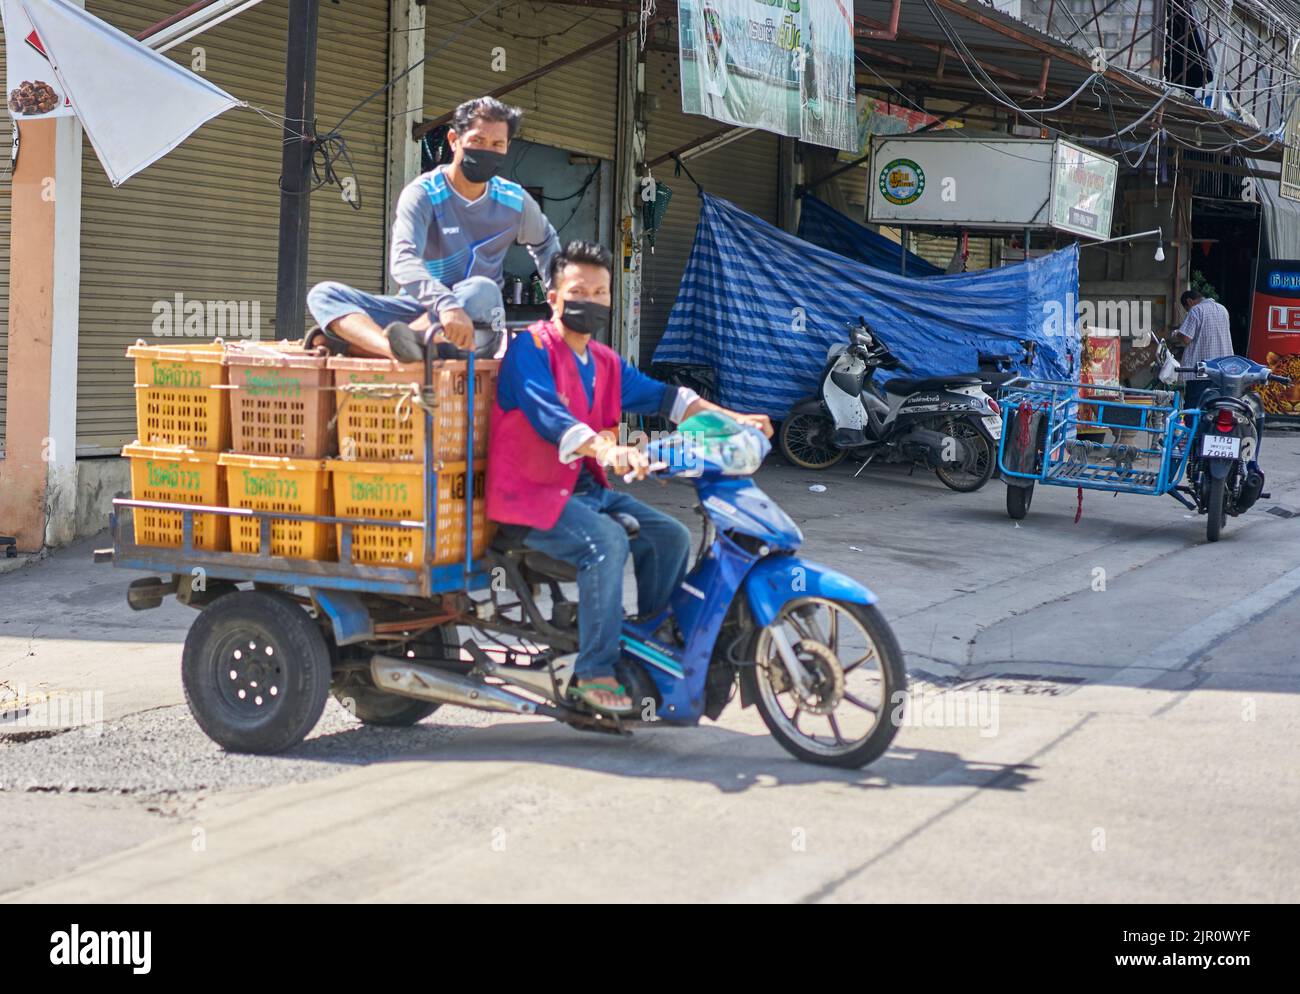 Employés sur un marché des fruits et légumes en Thaïlande, transportant des boîtes de fruits sur une moto. Banque D'Images